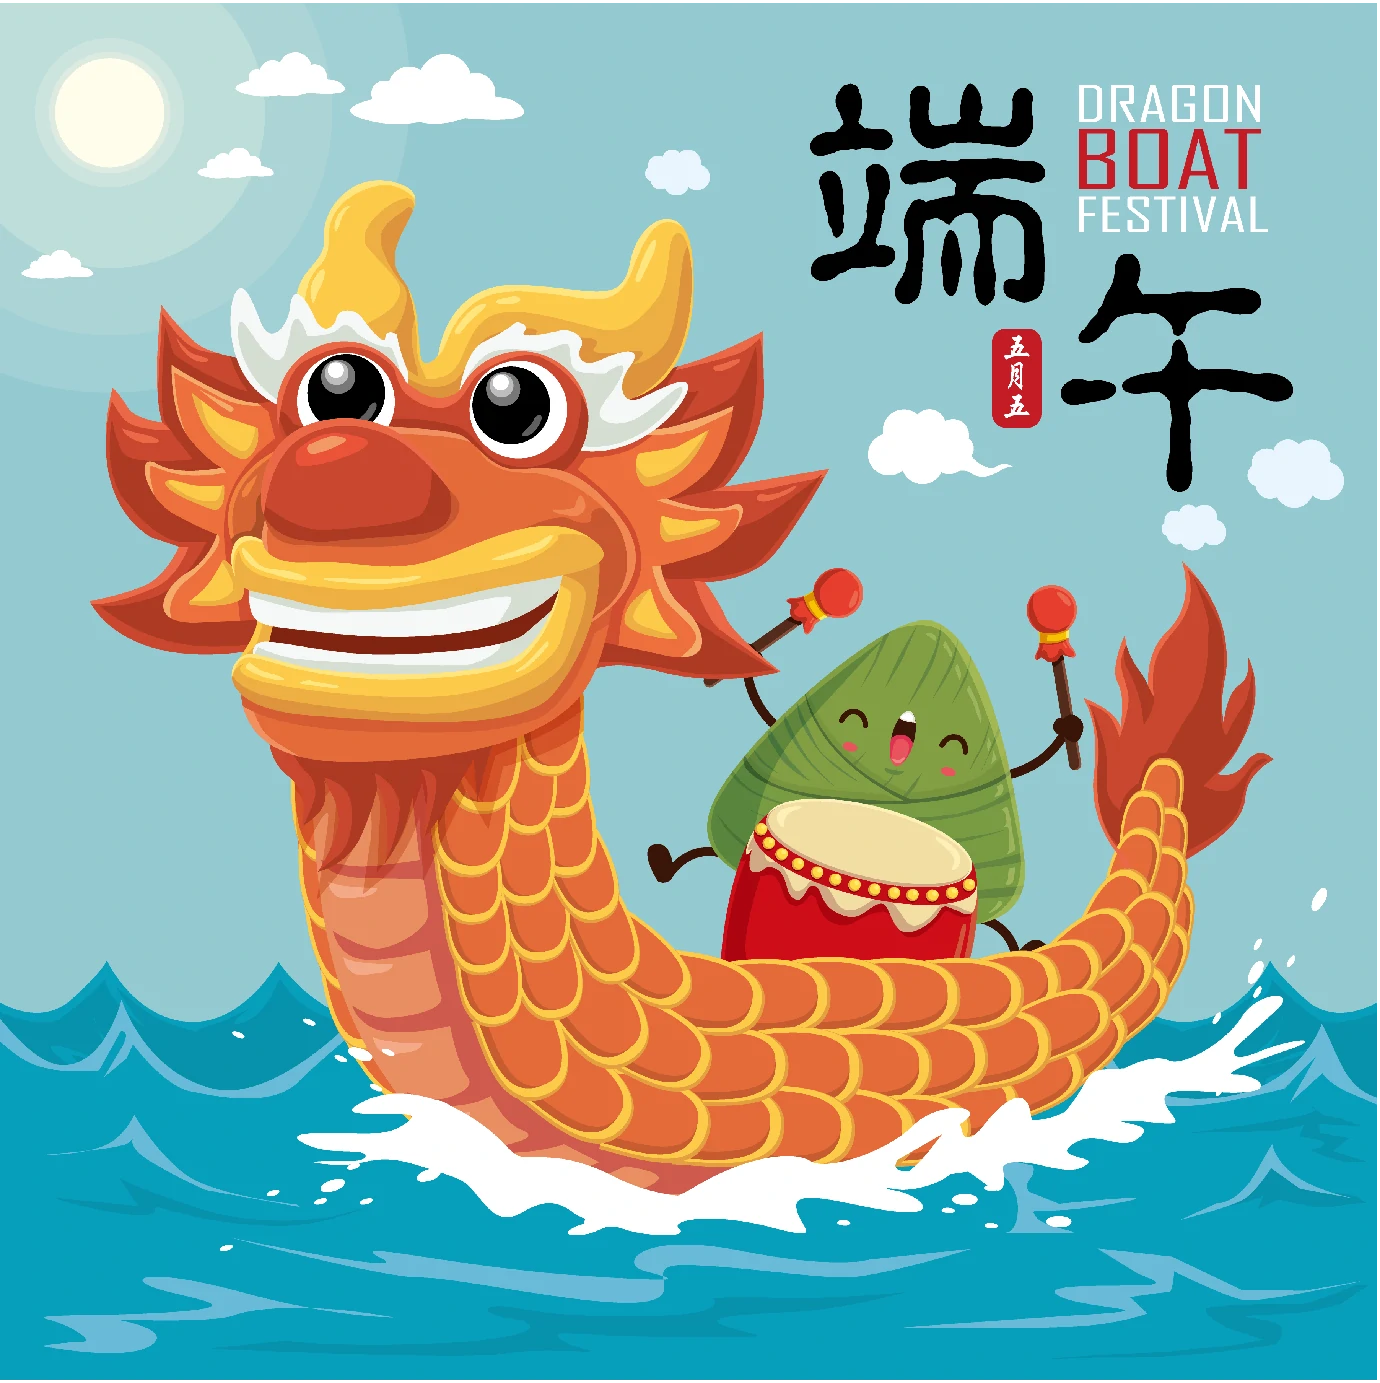 中国传统节日卡通手绘端午节赛龙舟粽子插画海报AI矢量设计素材【013】